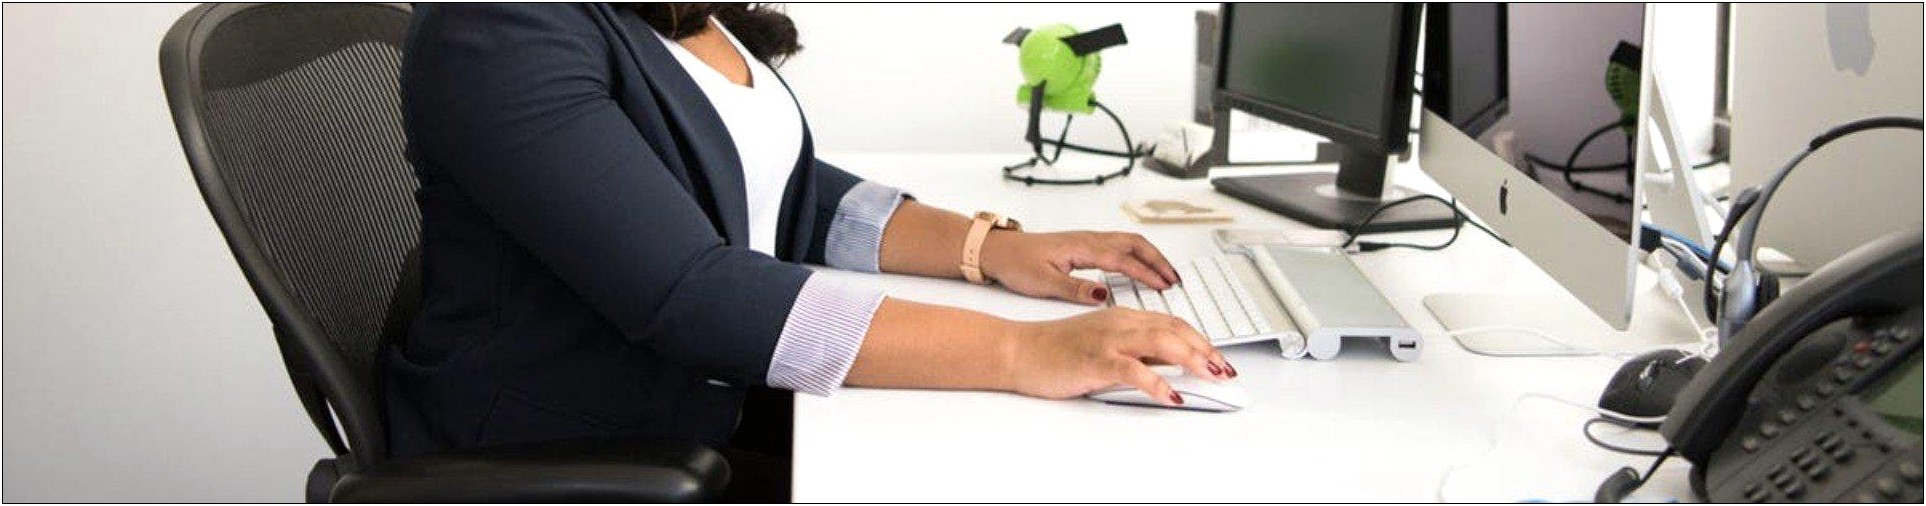 Dealerships Front Desk Resume Job Examples